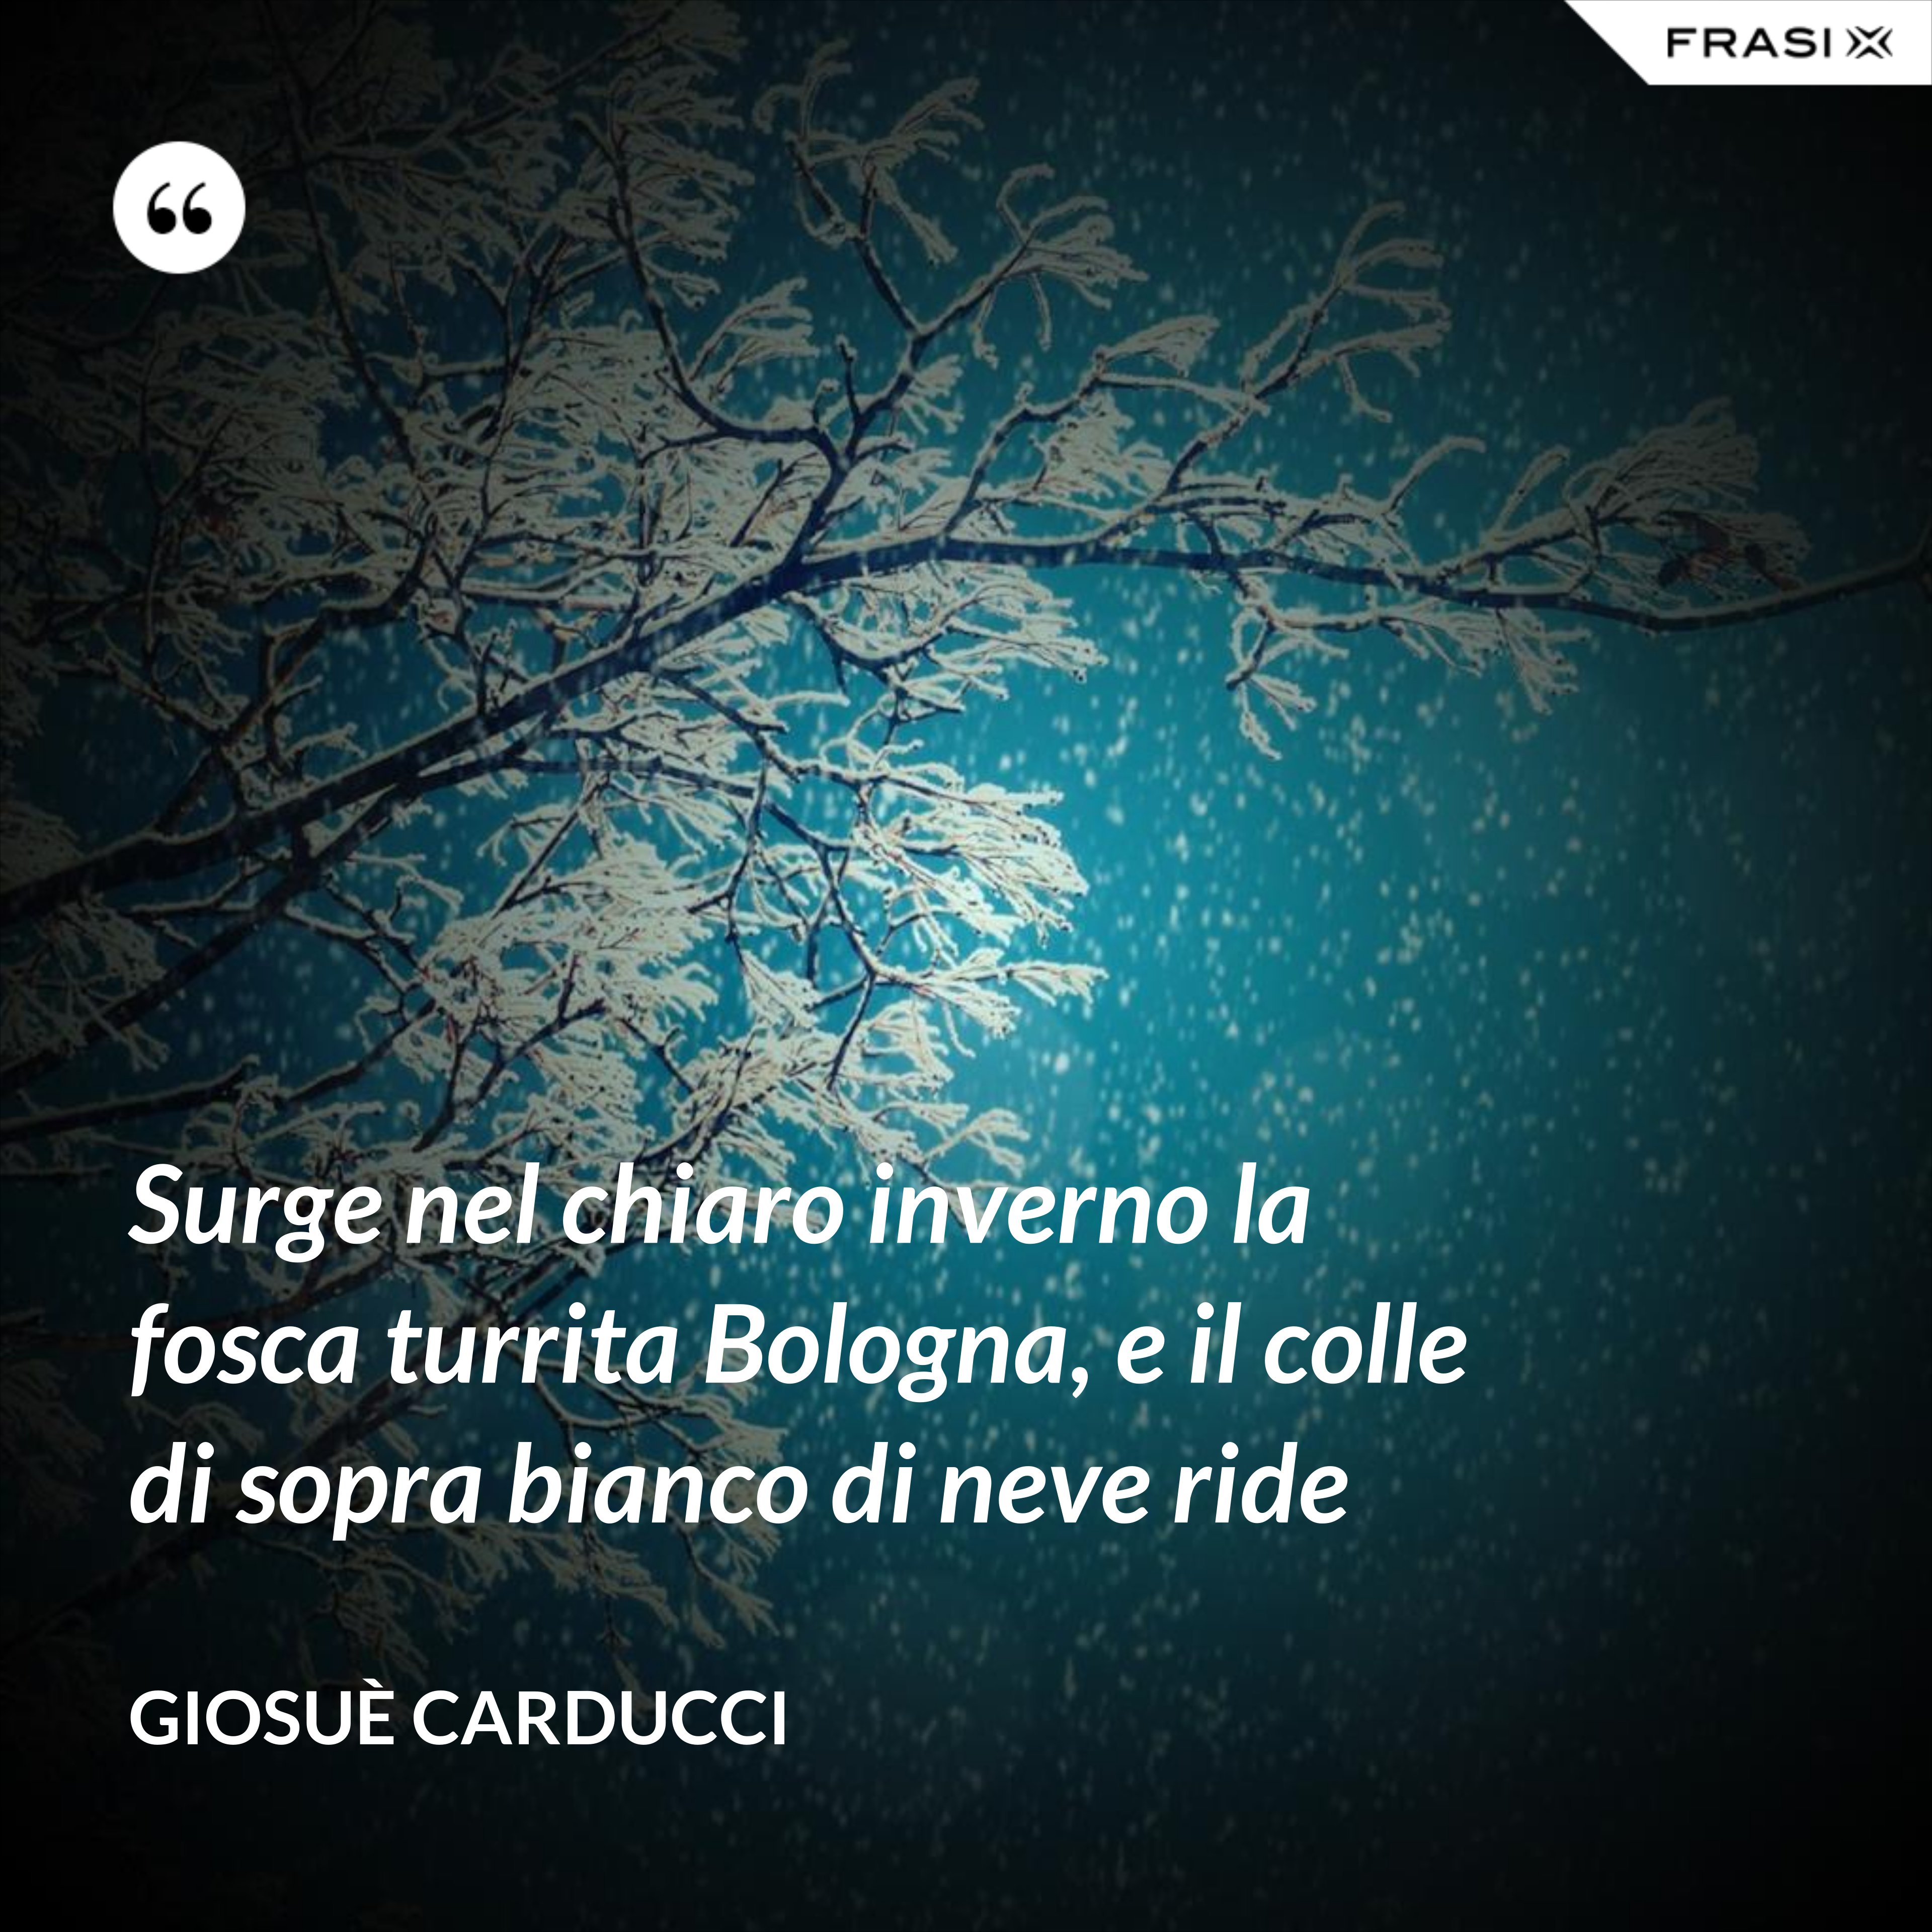 Surge nel chiaro inverno la fosca turrita Bologna, e il colle di sopra bianco di neve ride - Giosuè Carducci